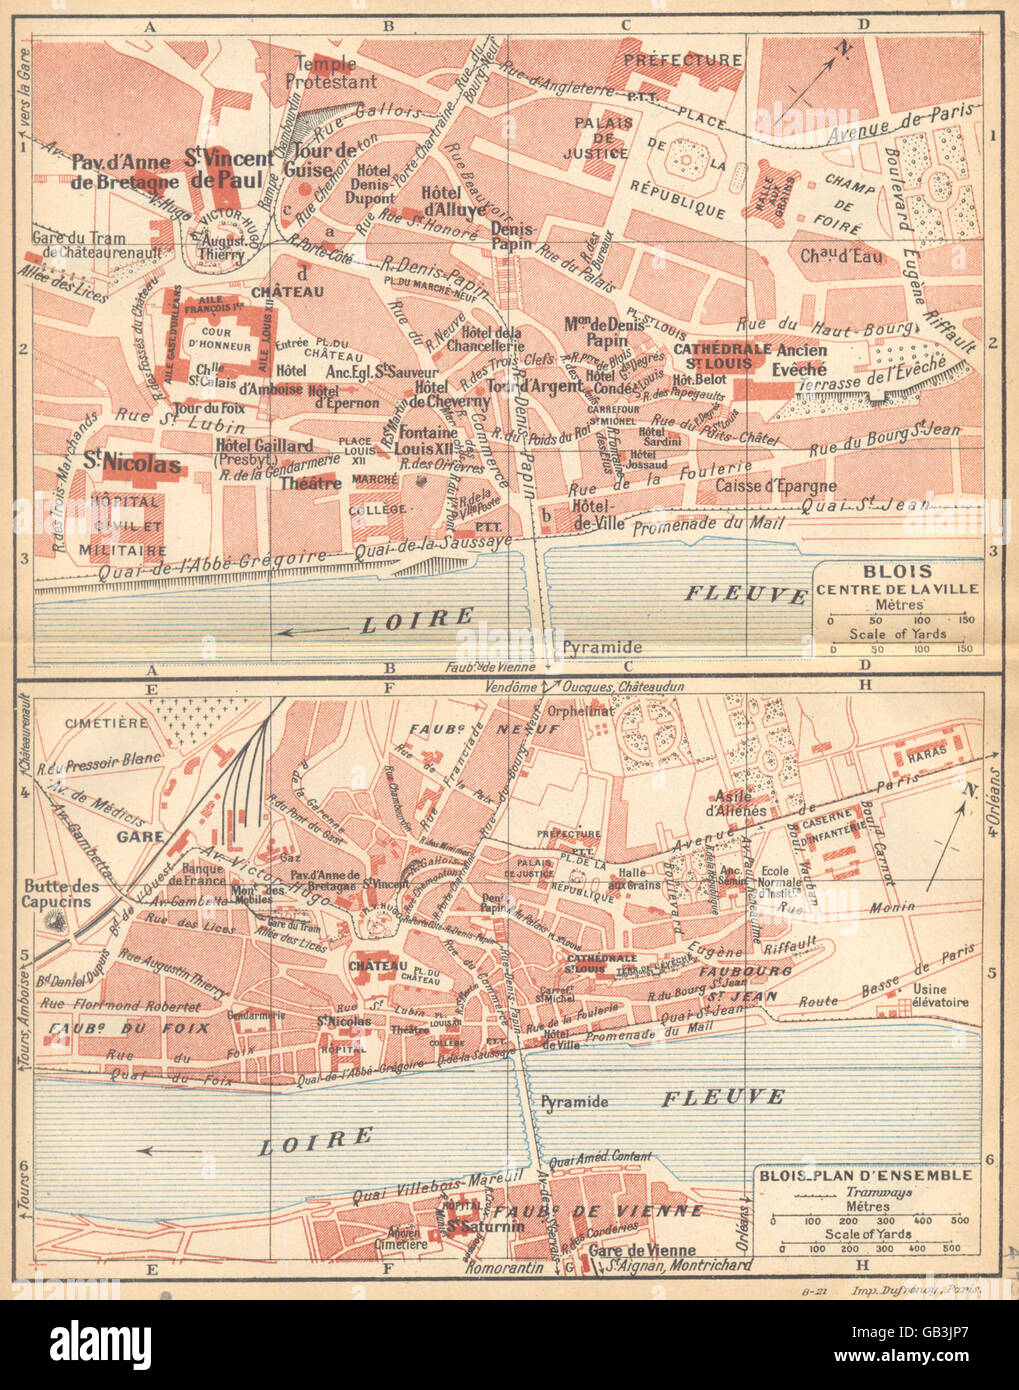 LOIR- ET- CHER: Blois centre de la Ville; Blois Plan D'ensemble, 1922 old map Stock Photo